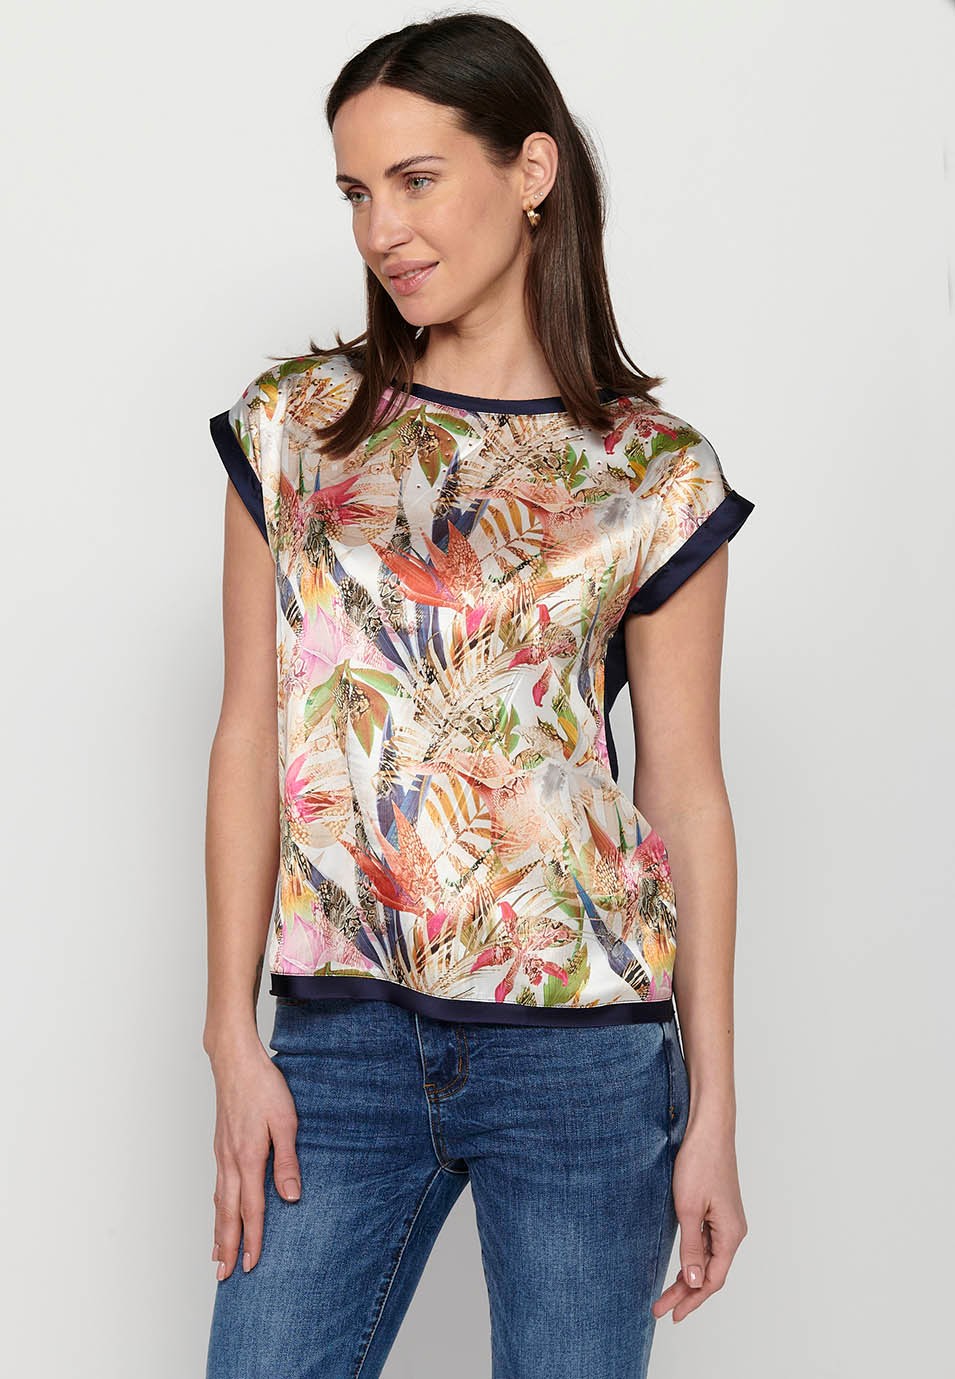 Samarreta de màniga curta, estampat davanter tropical multicolor per a dona